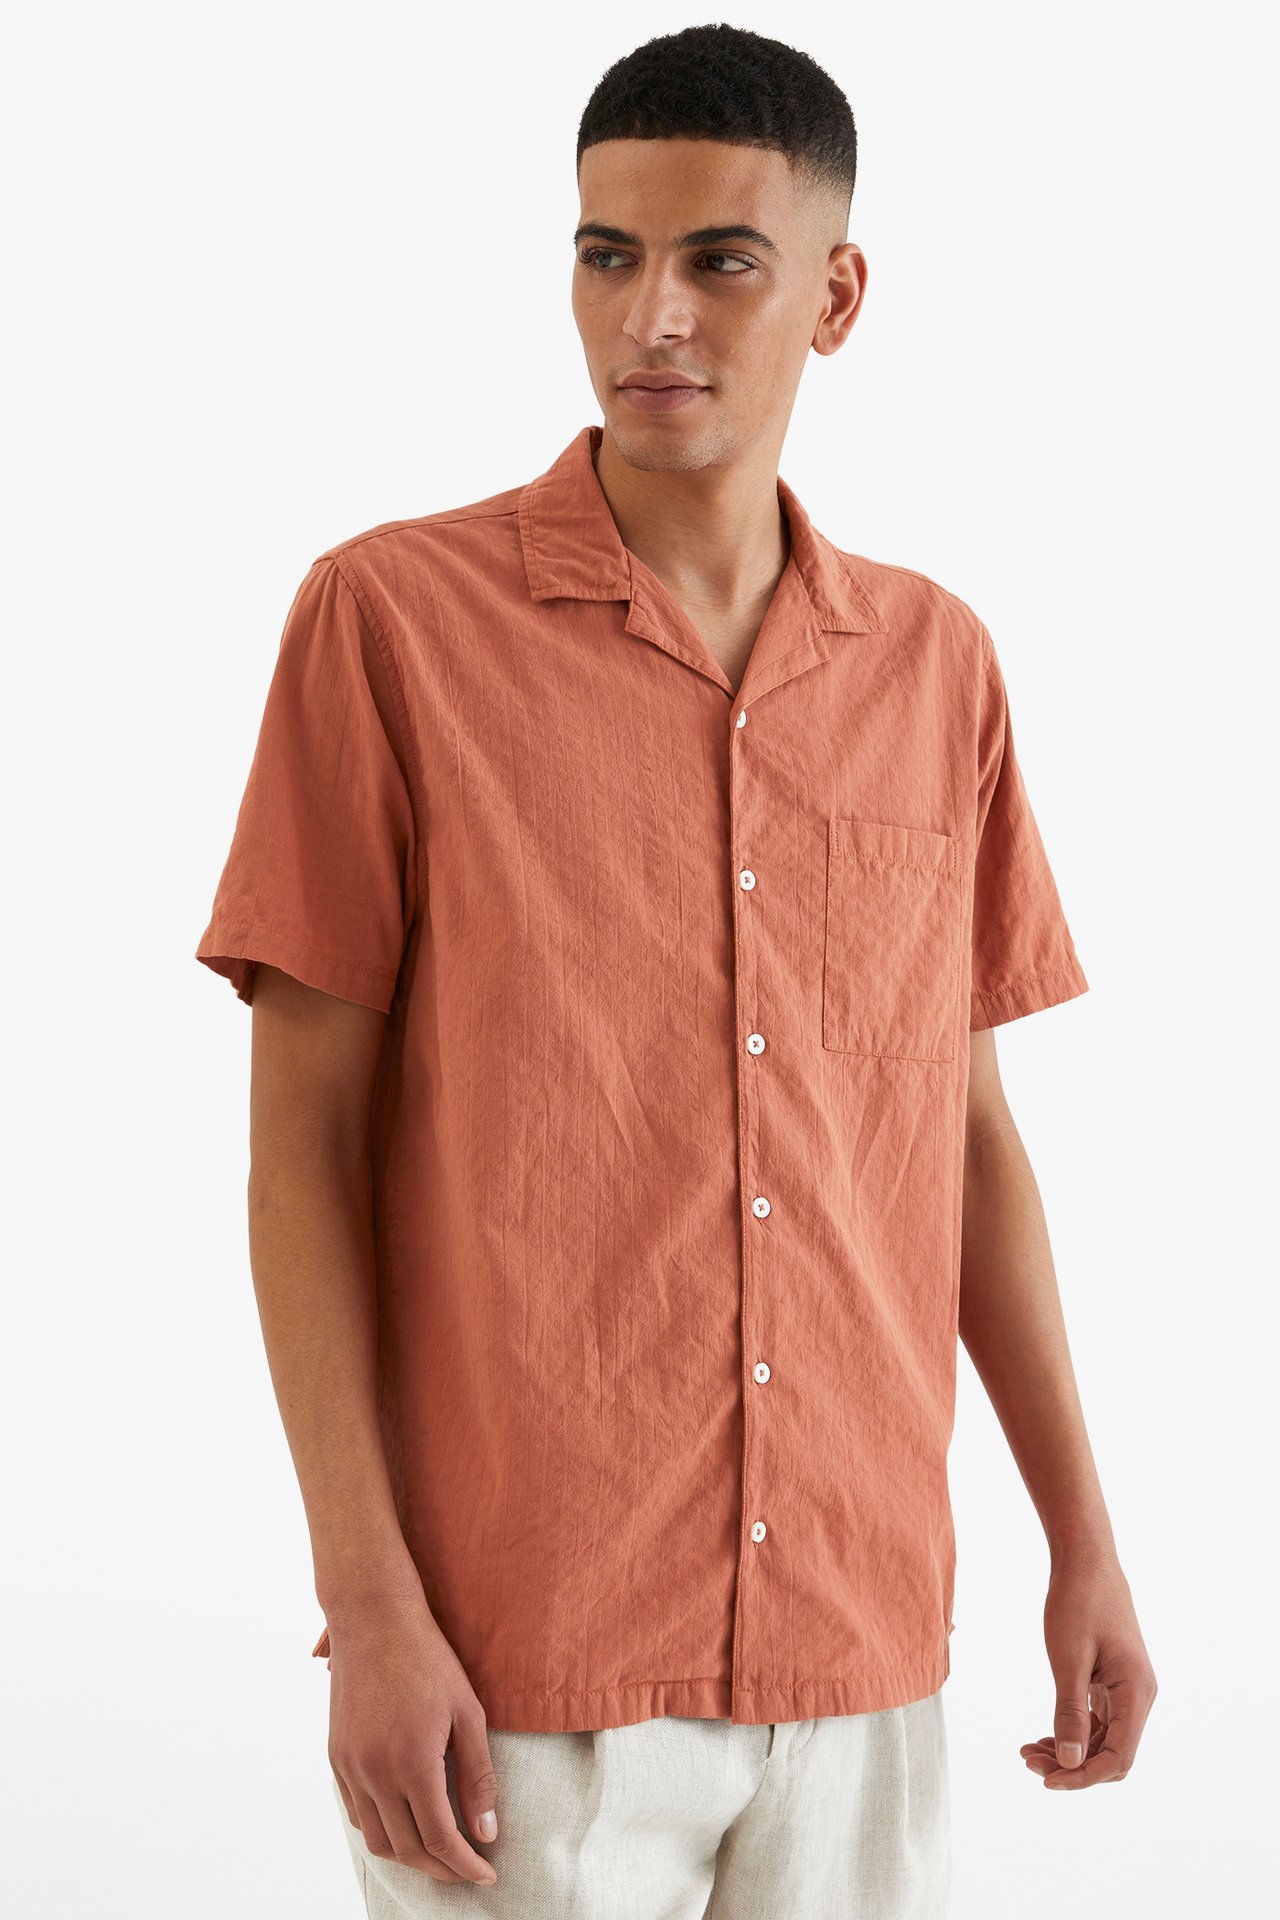 Resortskjorta i bäckebölja - Brun - 189cm / Storlek: M - 2